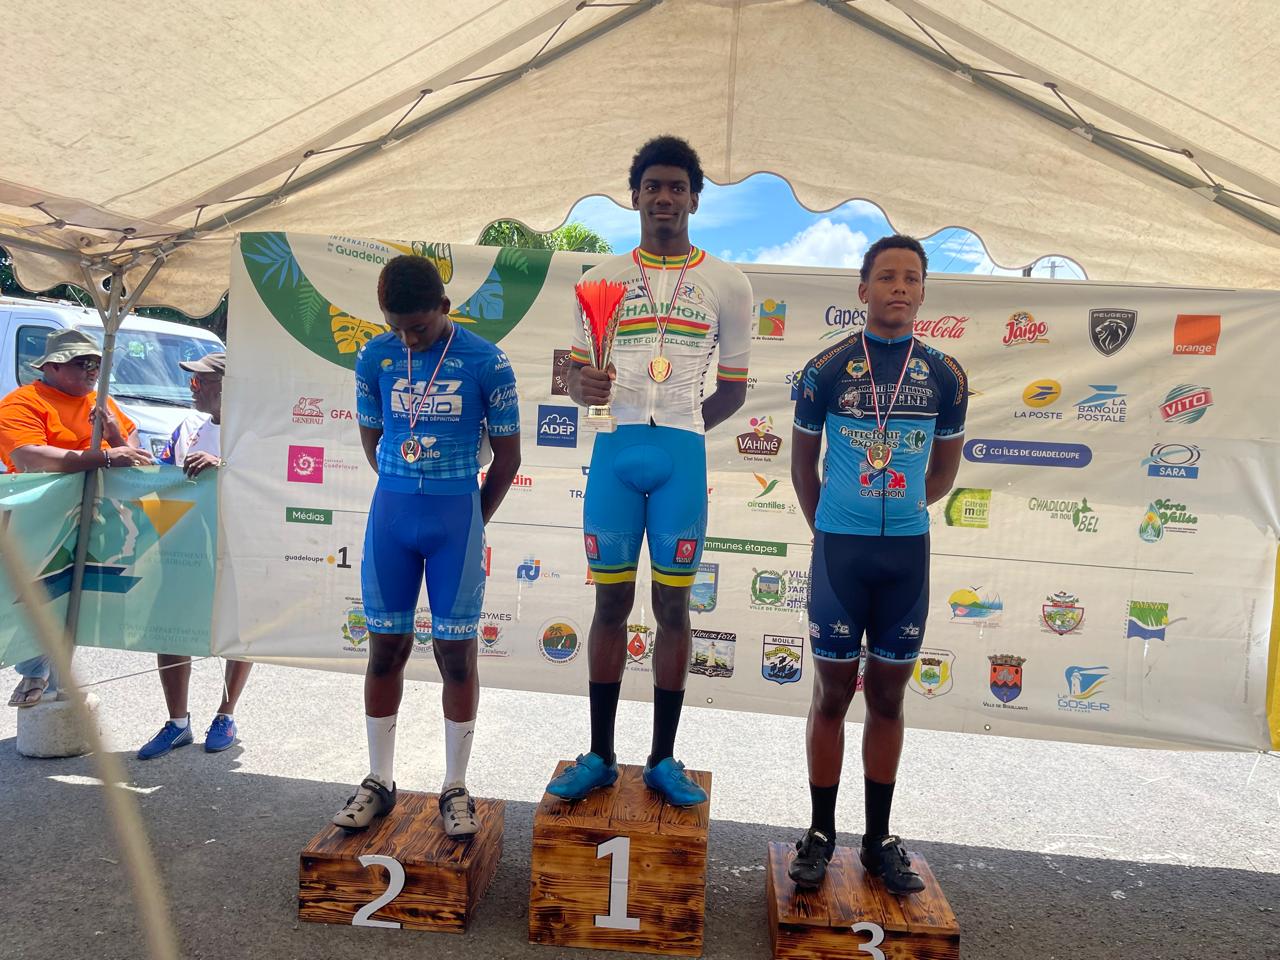     U17 et U23 : Palene et Vanony, nouveaux champions sur route de Guadeloupe 

